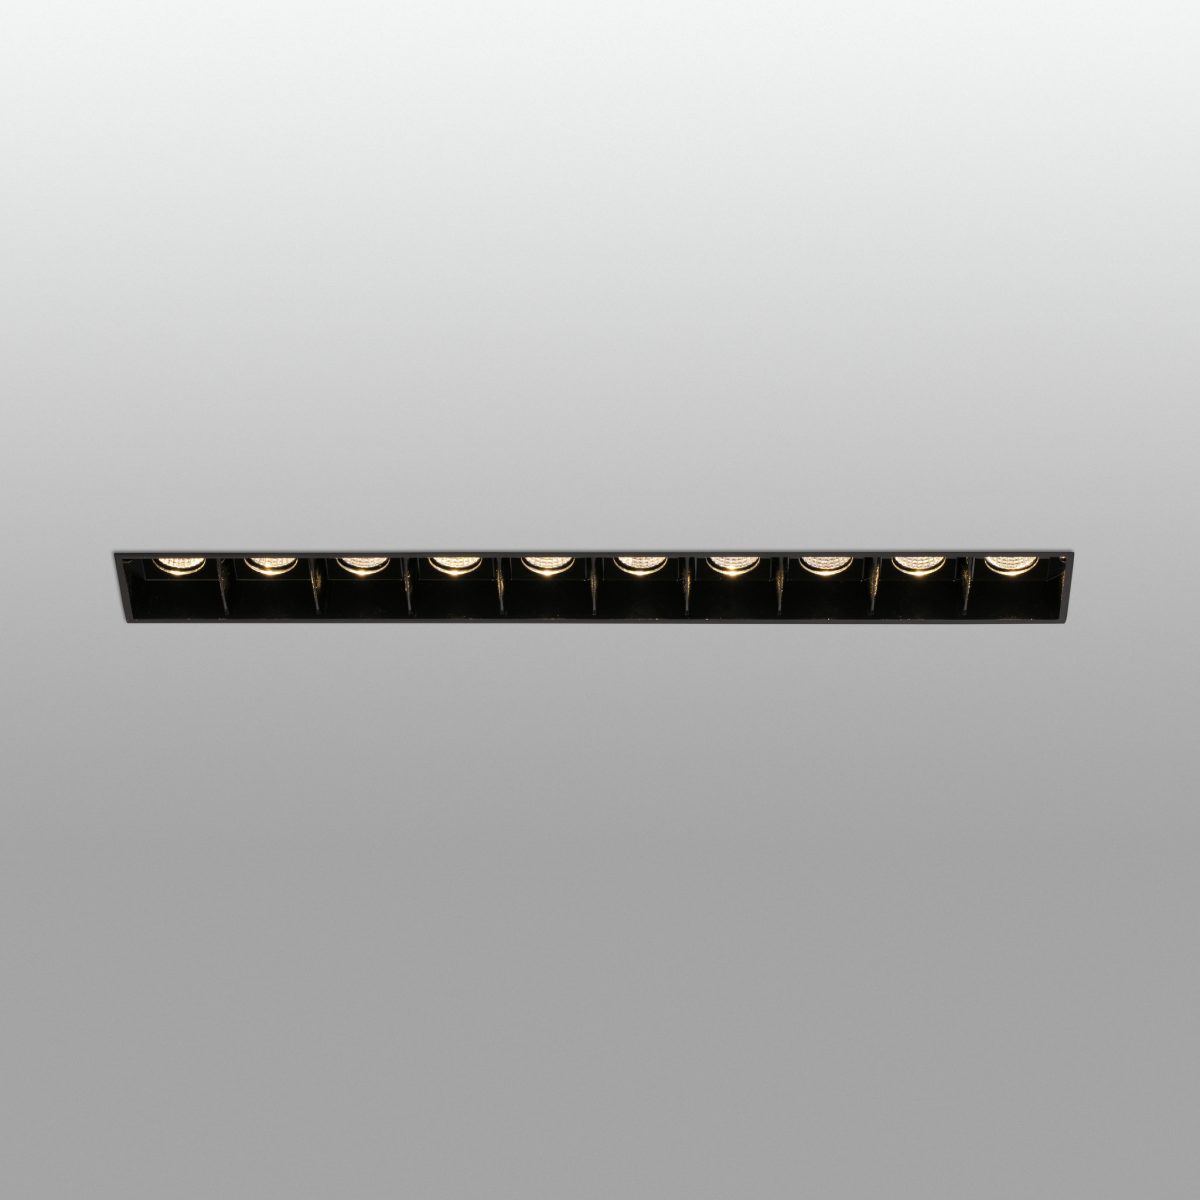 TROOP Foco de Faro. Medidas: L 252 x A 71 x F 108 mm. Color: Negro